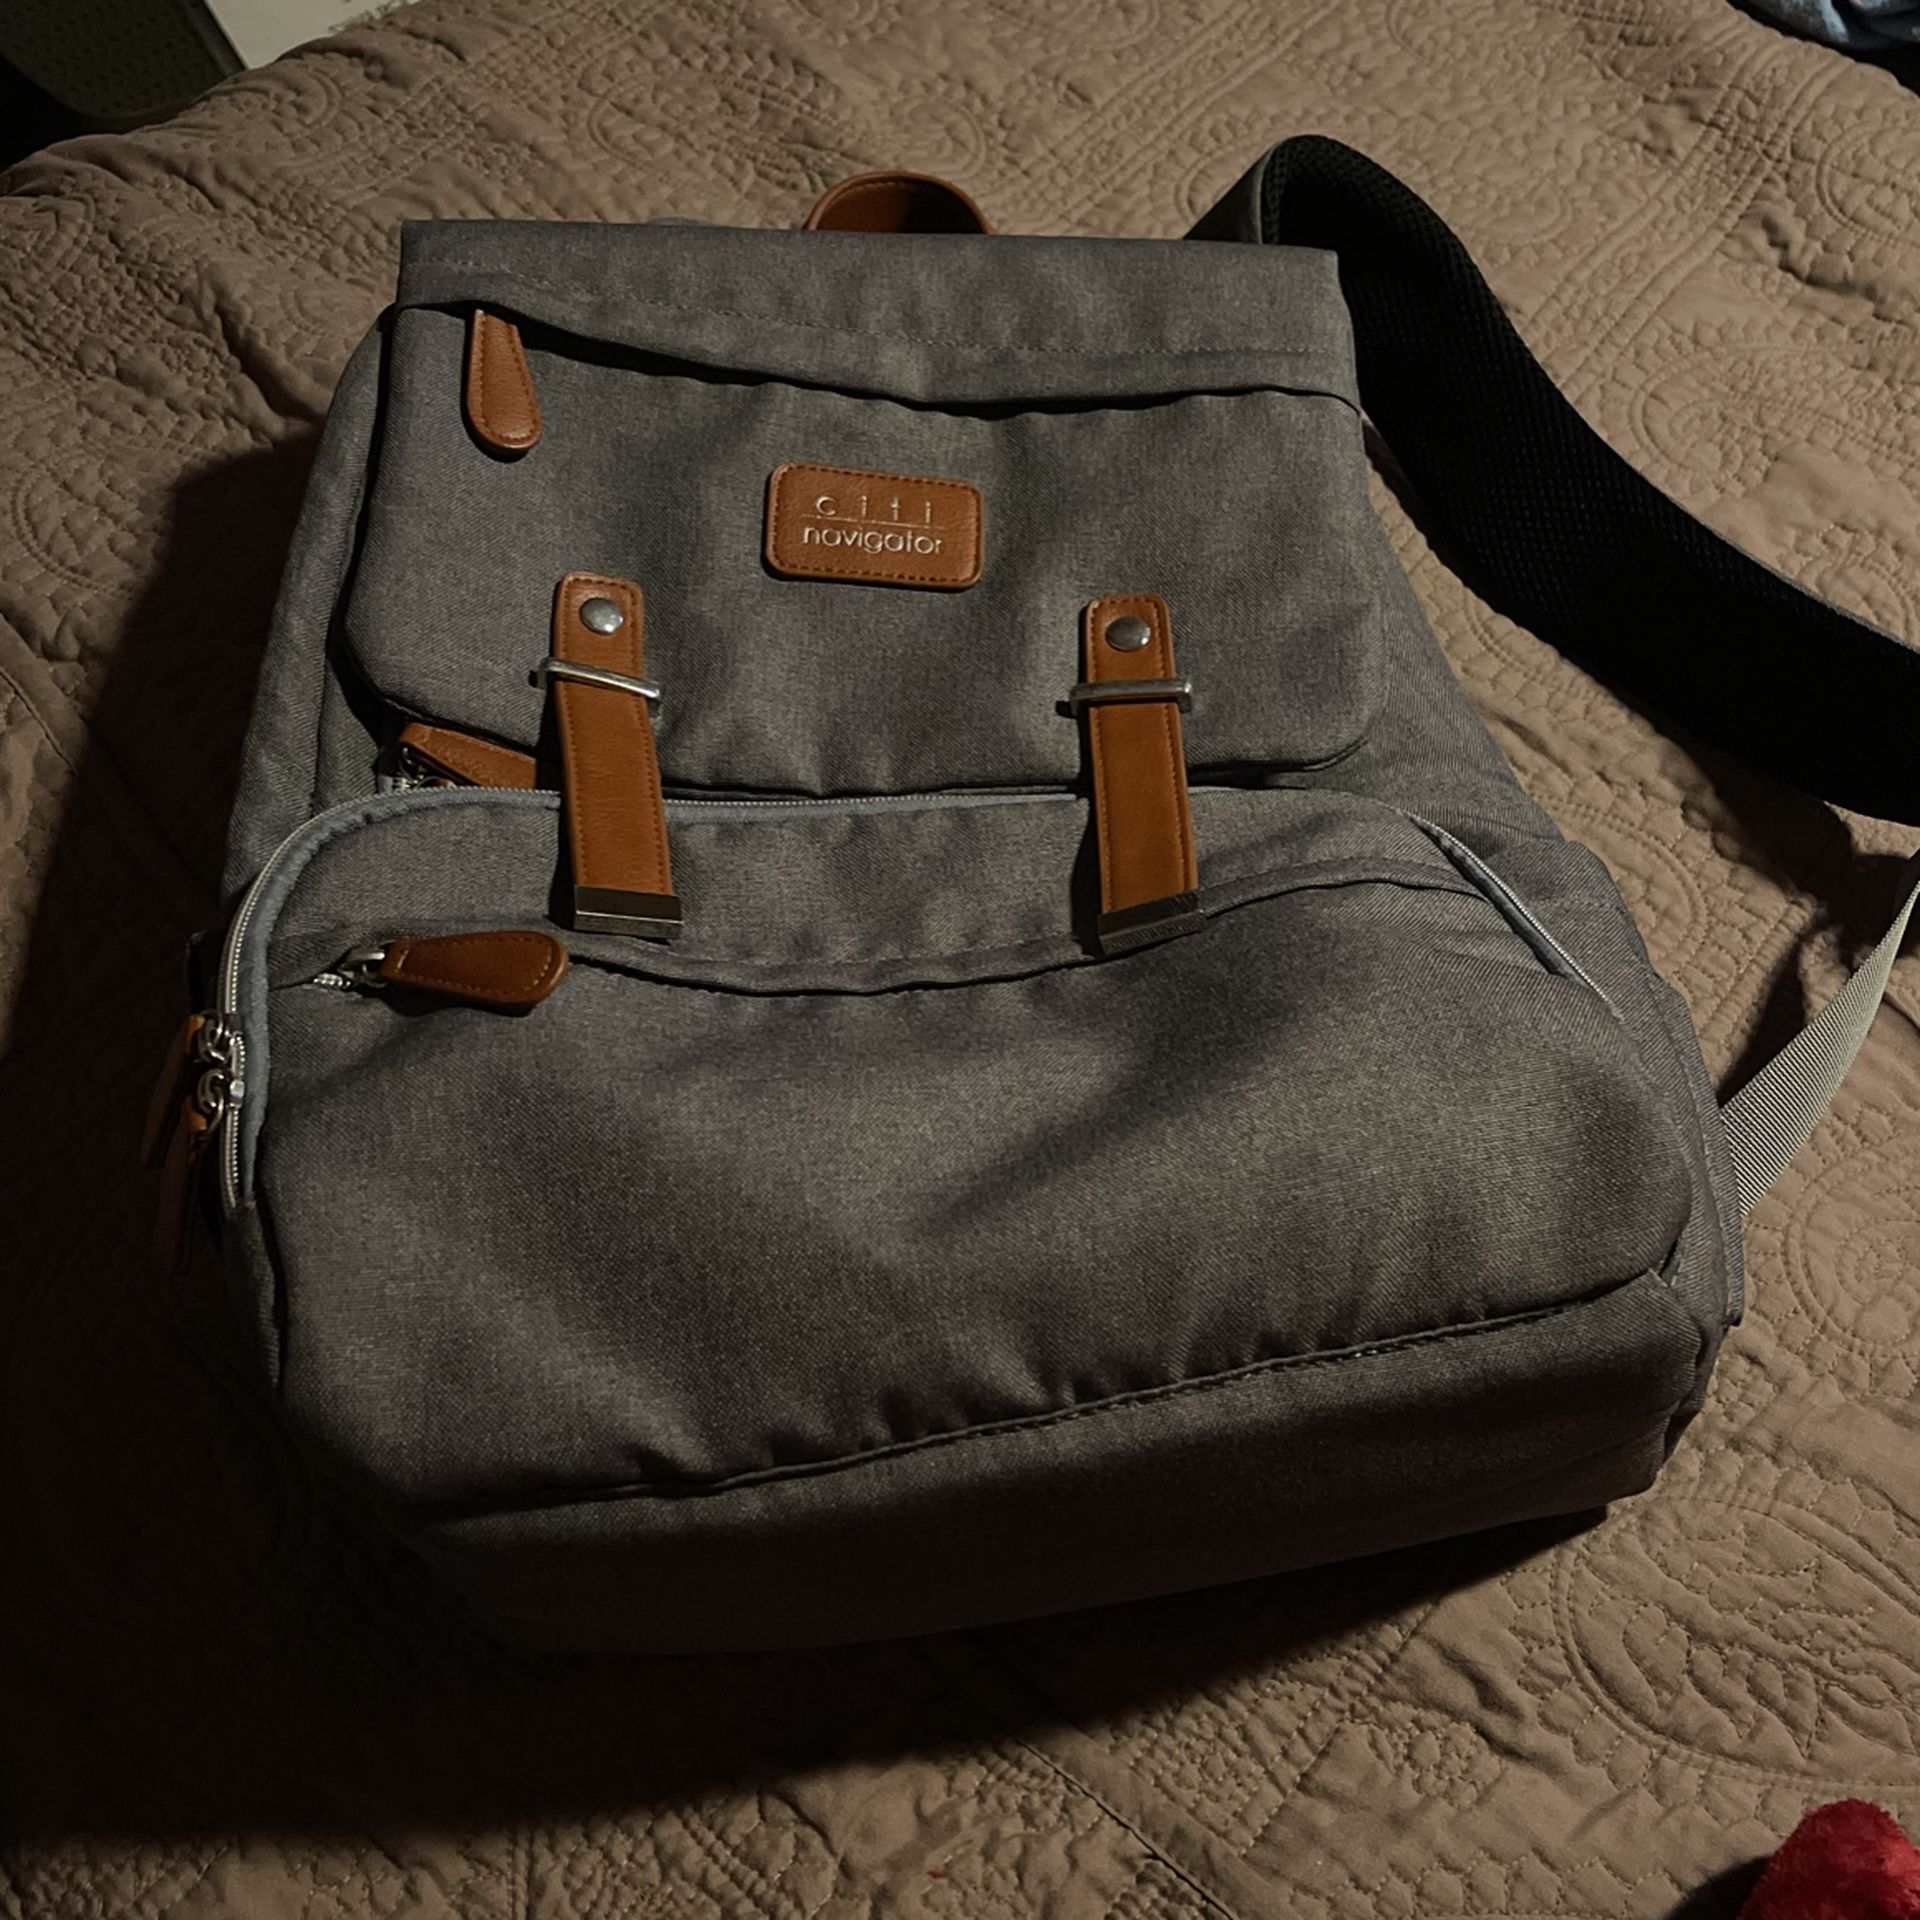 Skip*Hop Gray Citi Navigator Backpack Diaper Bag